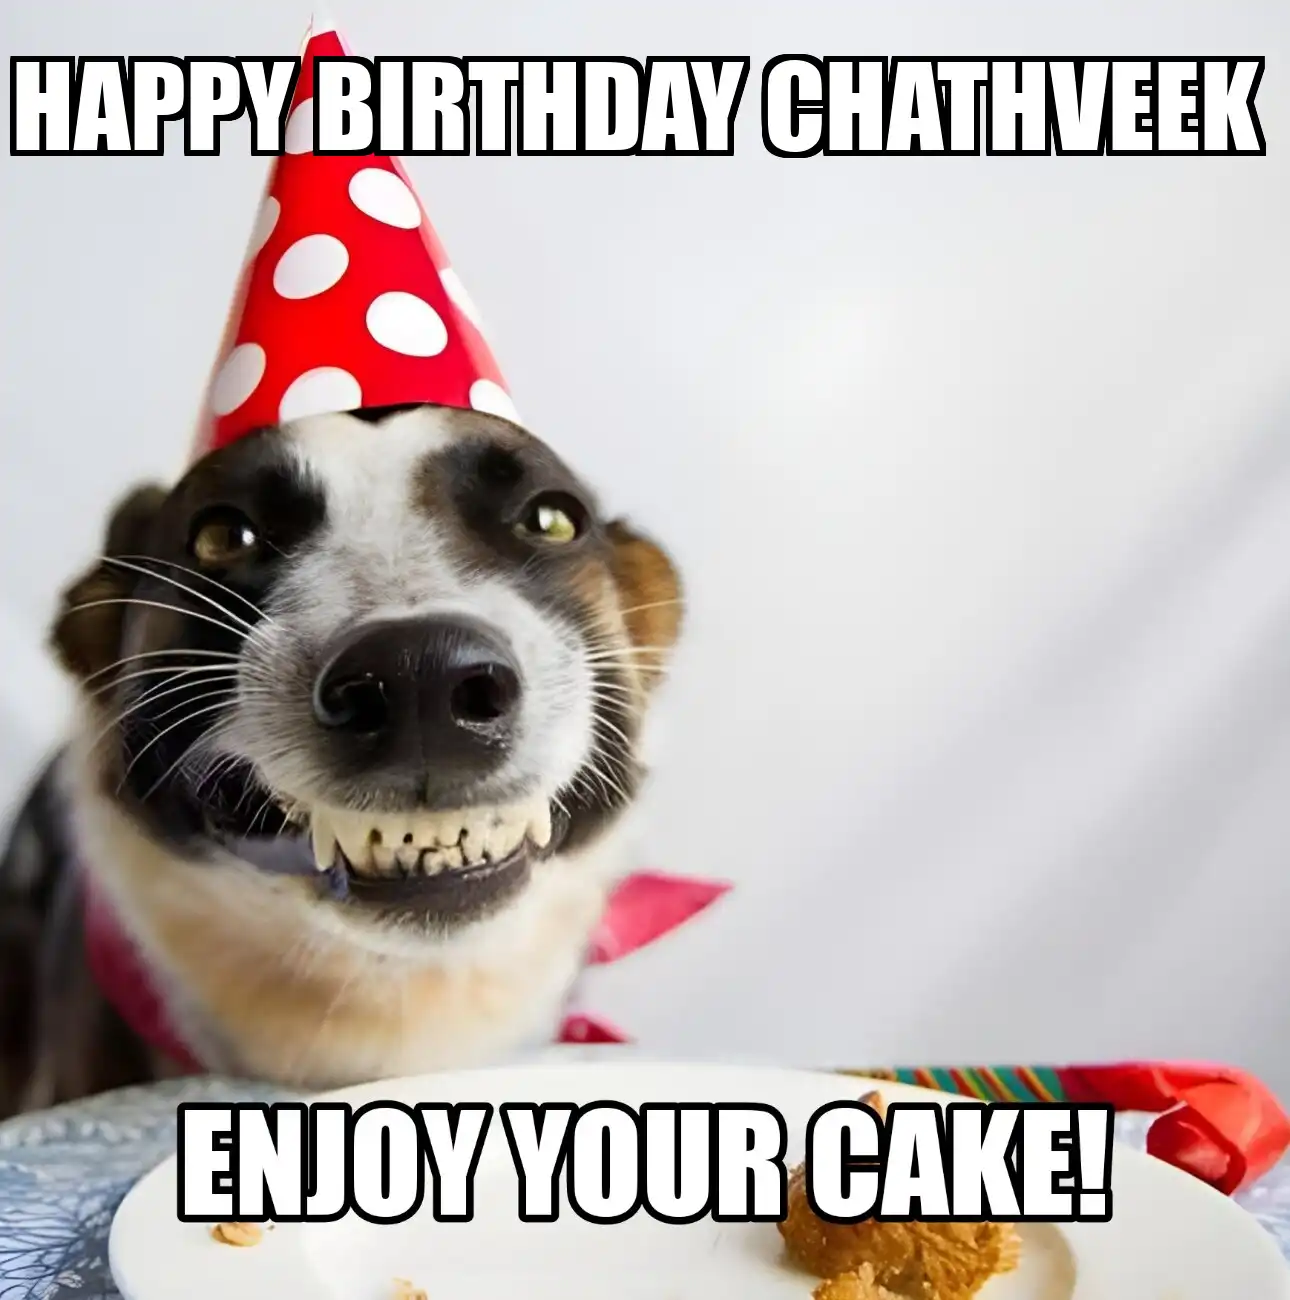 Happy Birthday Chathveek Enjoy Your Cake Dog Meme